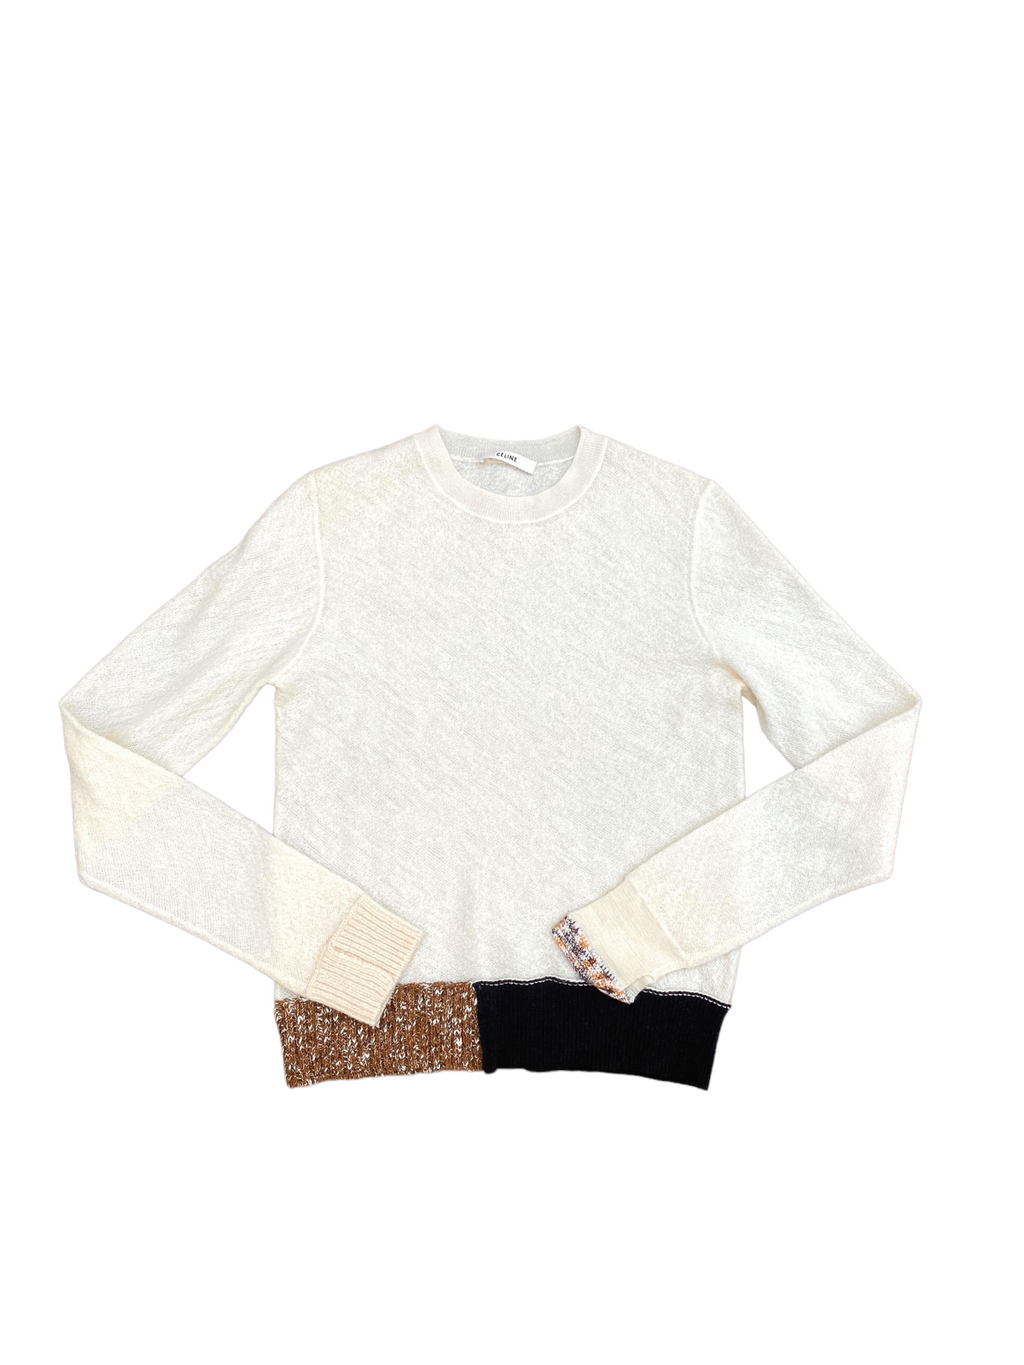 SS 2017  Offwhite / Ecru Sweater